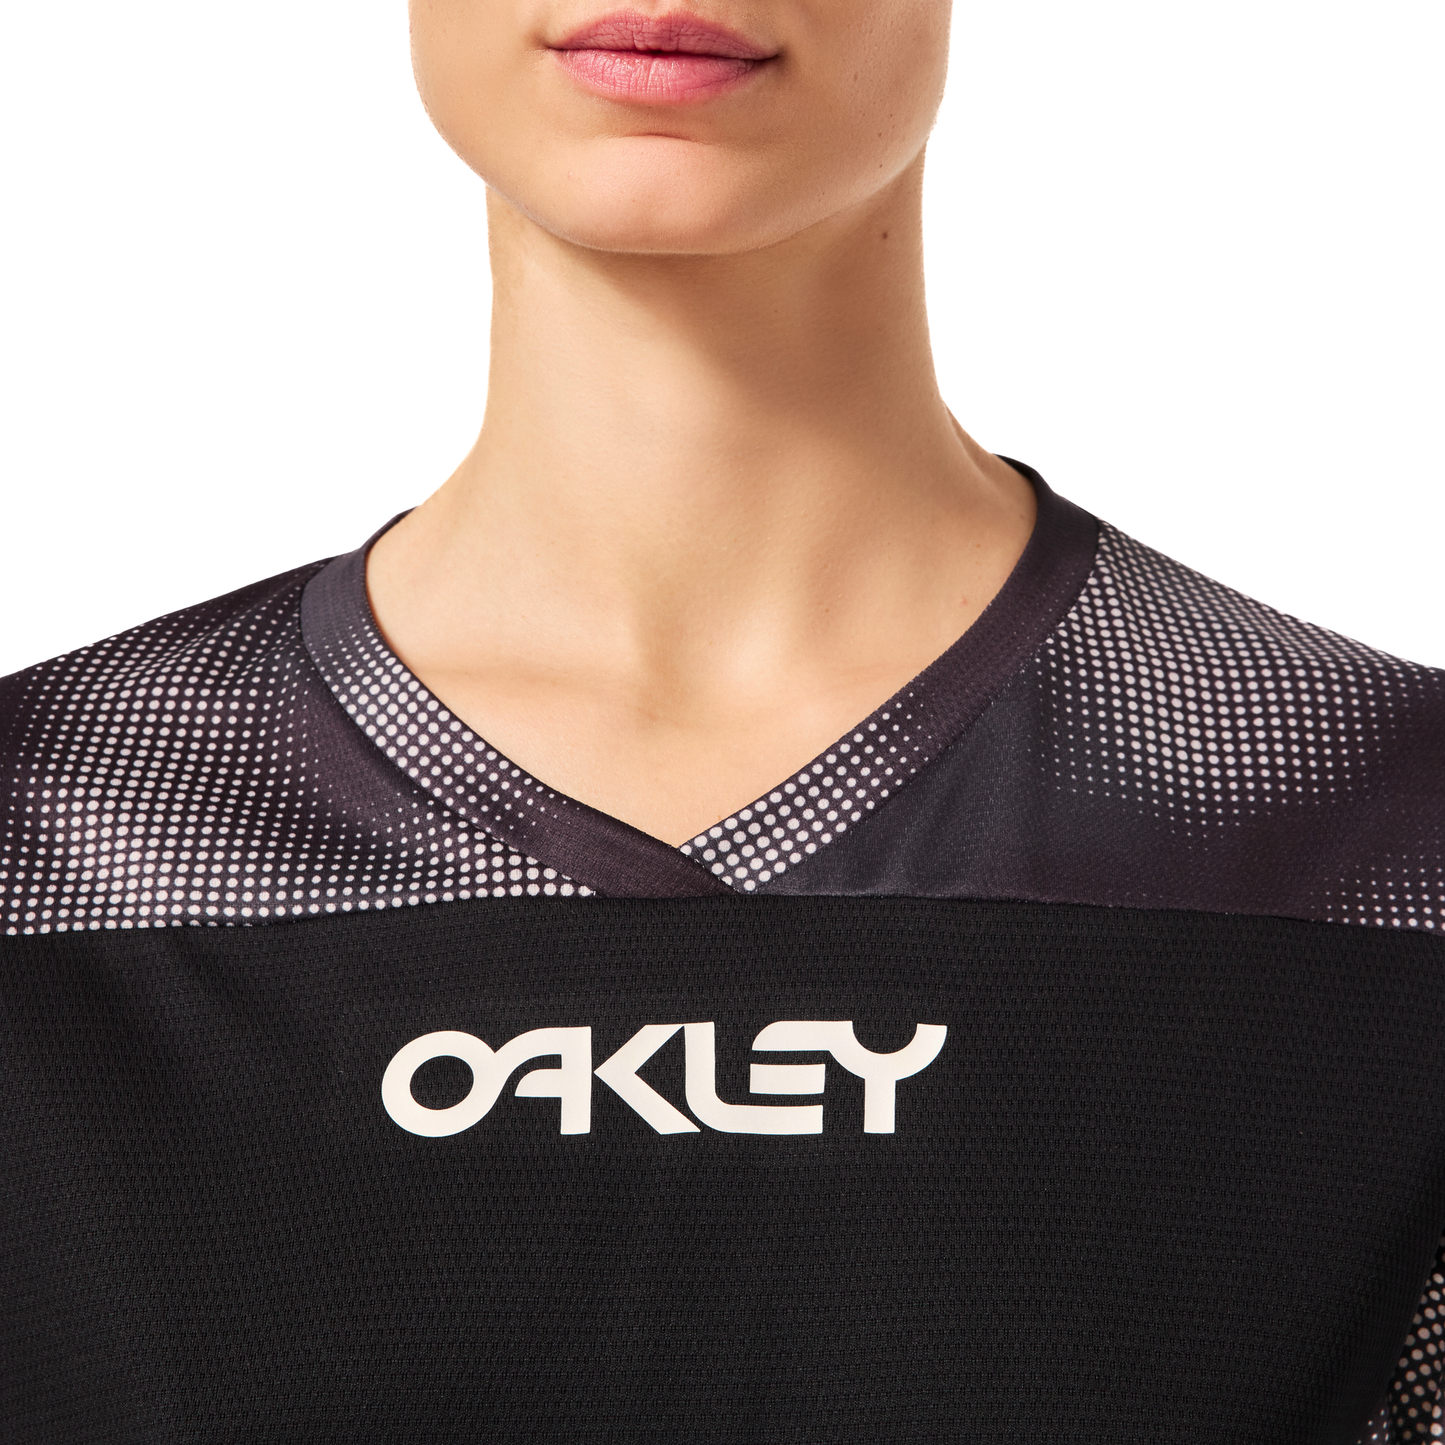 Oakley Women's Maven Coast Long Sleeve Jersey - Women's L - Organic Spots Black